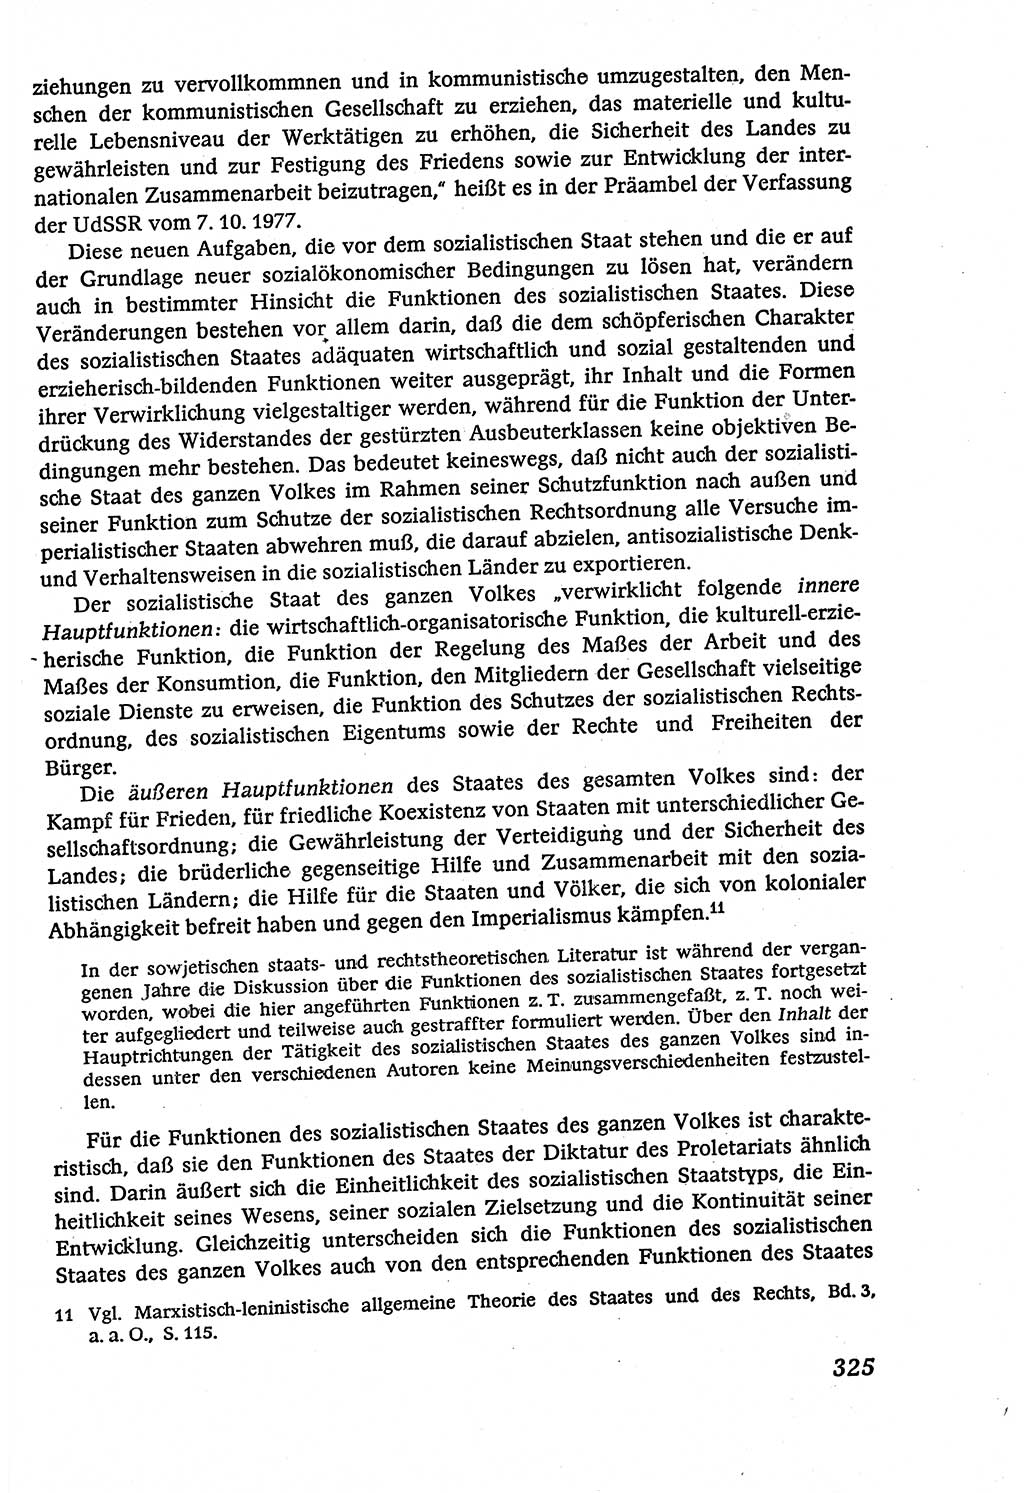 Marxistisch-leninistische (ML) Staats- und Rechtstheorie [Deutsche Demokratische Republik (DDR)], Lehrbuch 1980, Seite 325 (ML St.-R.-Th. DDR Lb. 1980, S. 325)